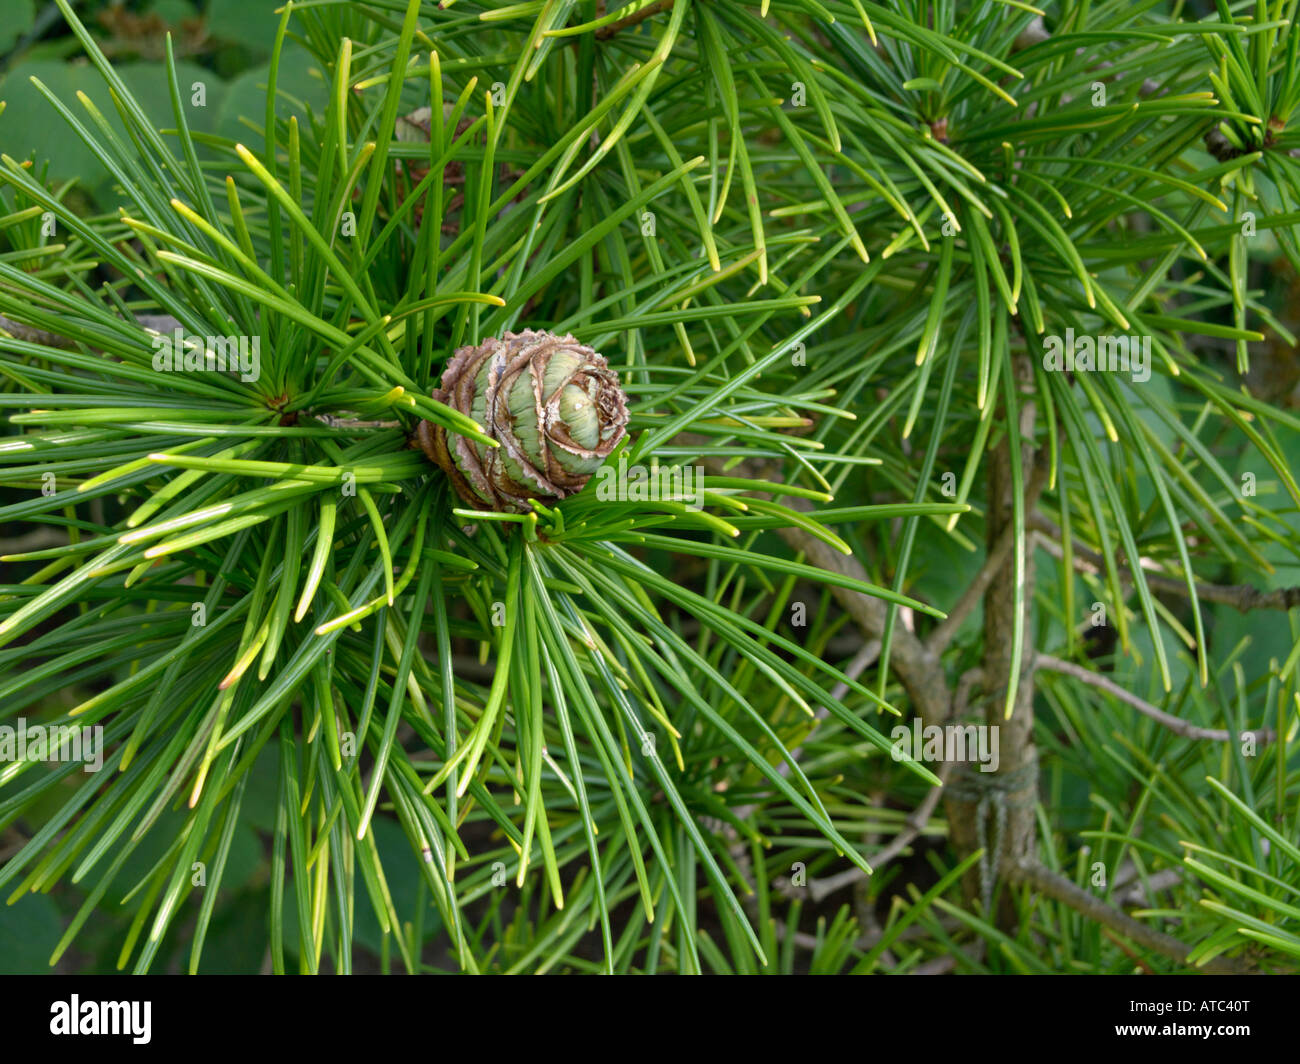 Umbrella pine (Sciadopitys verticillata) Stock Photo